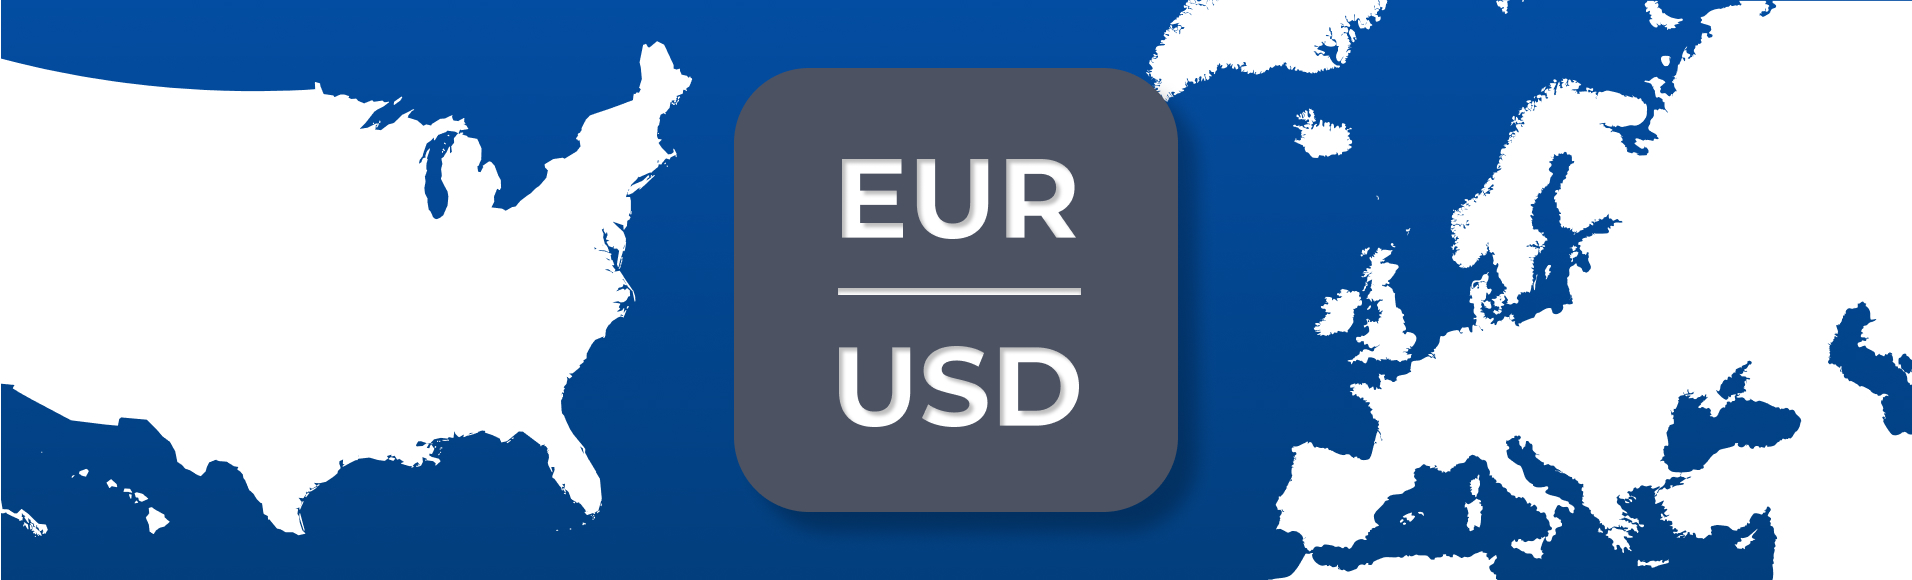 Principais pares de moedas. Parte 1: Europa e América